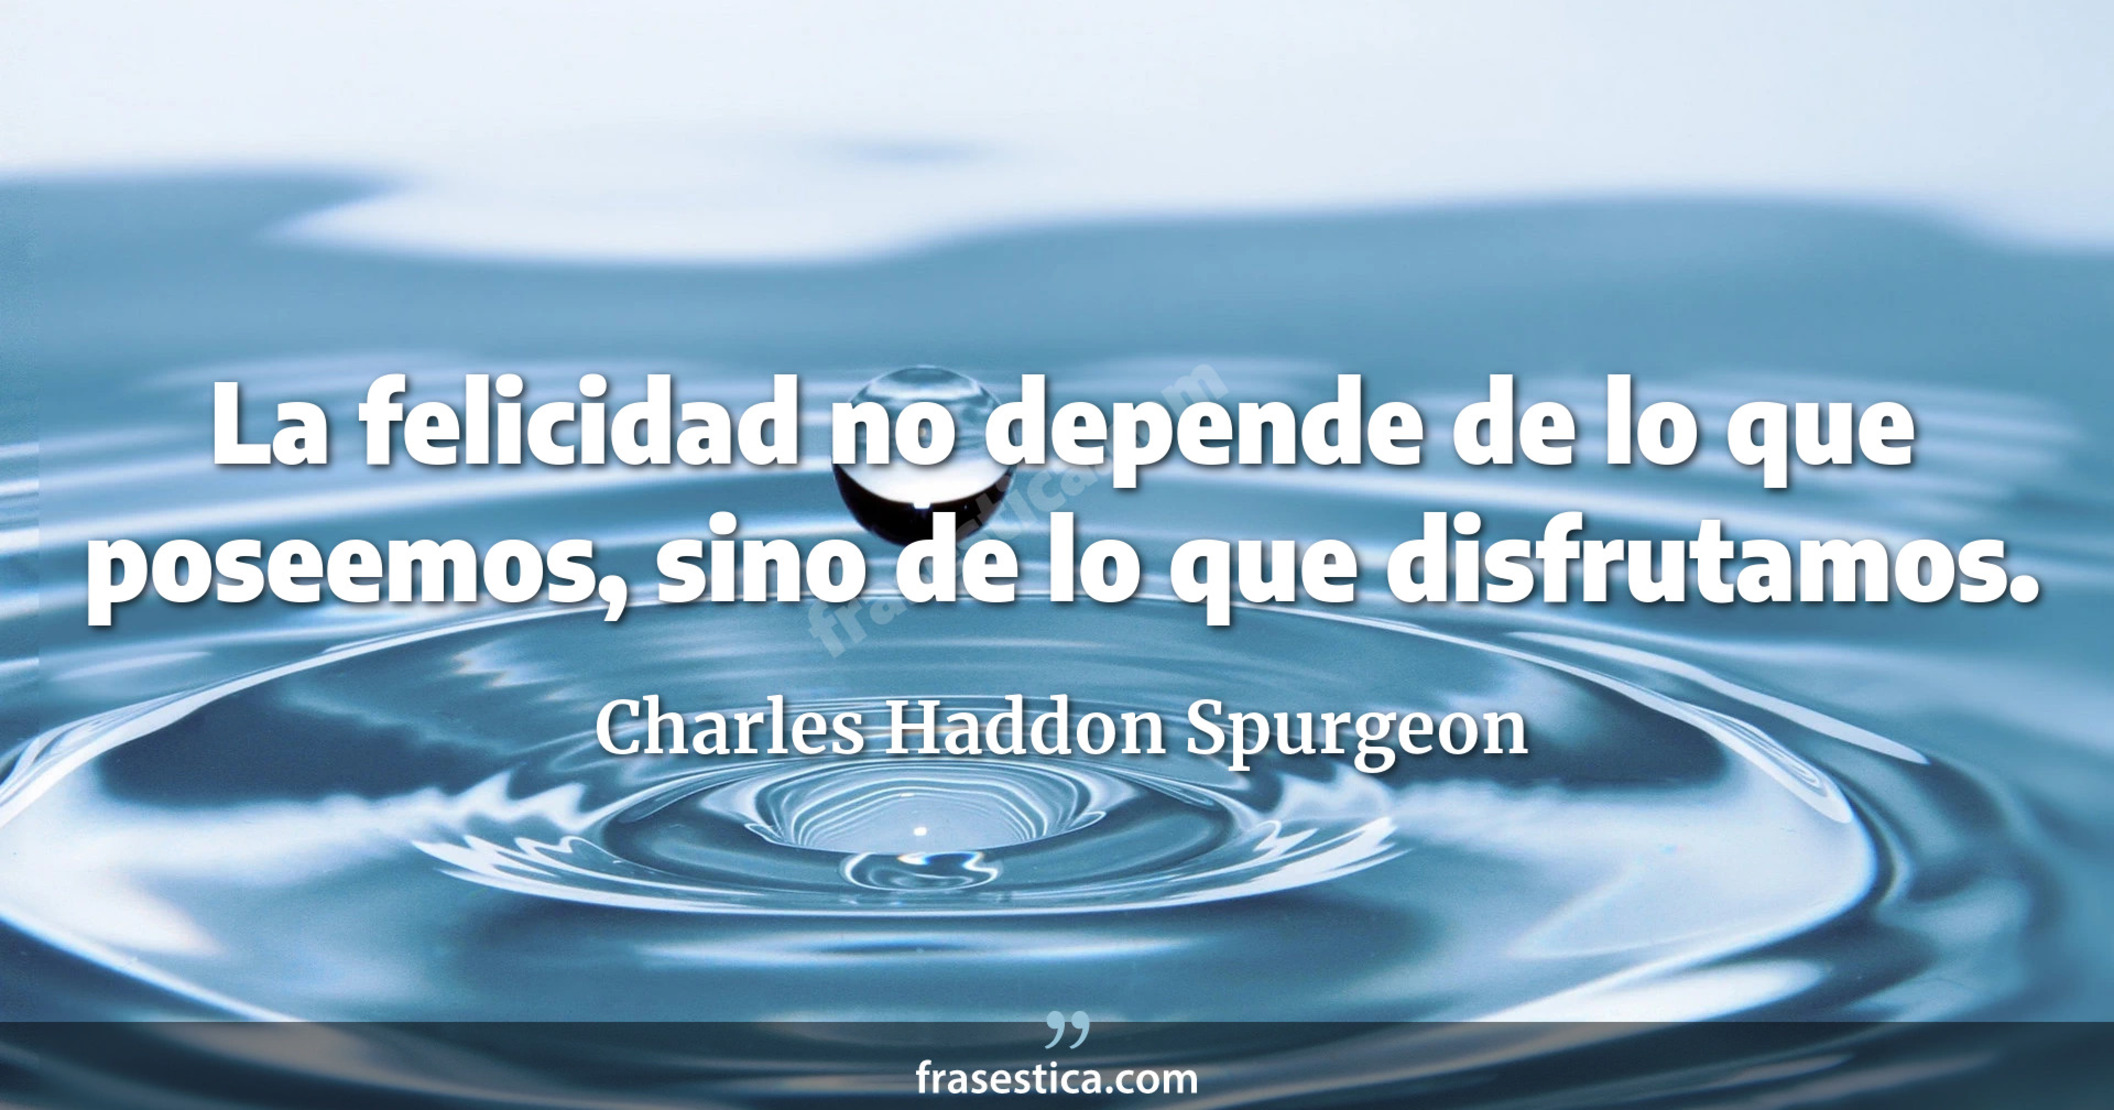 La felicidad no depende de lo que poseemos, sino de lo que disfrutamos. - Charles Haddon Spurgeon